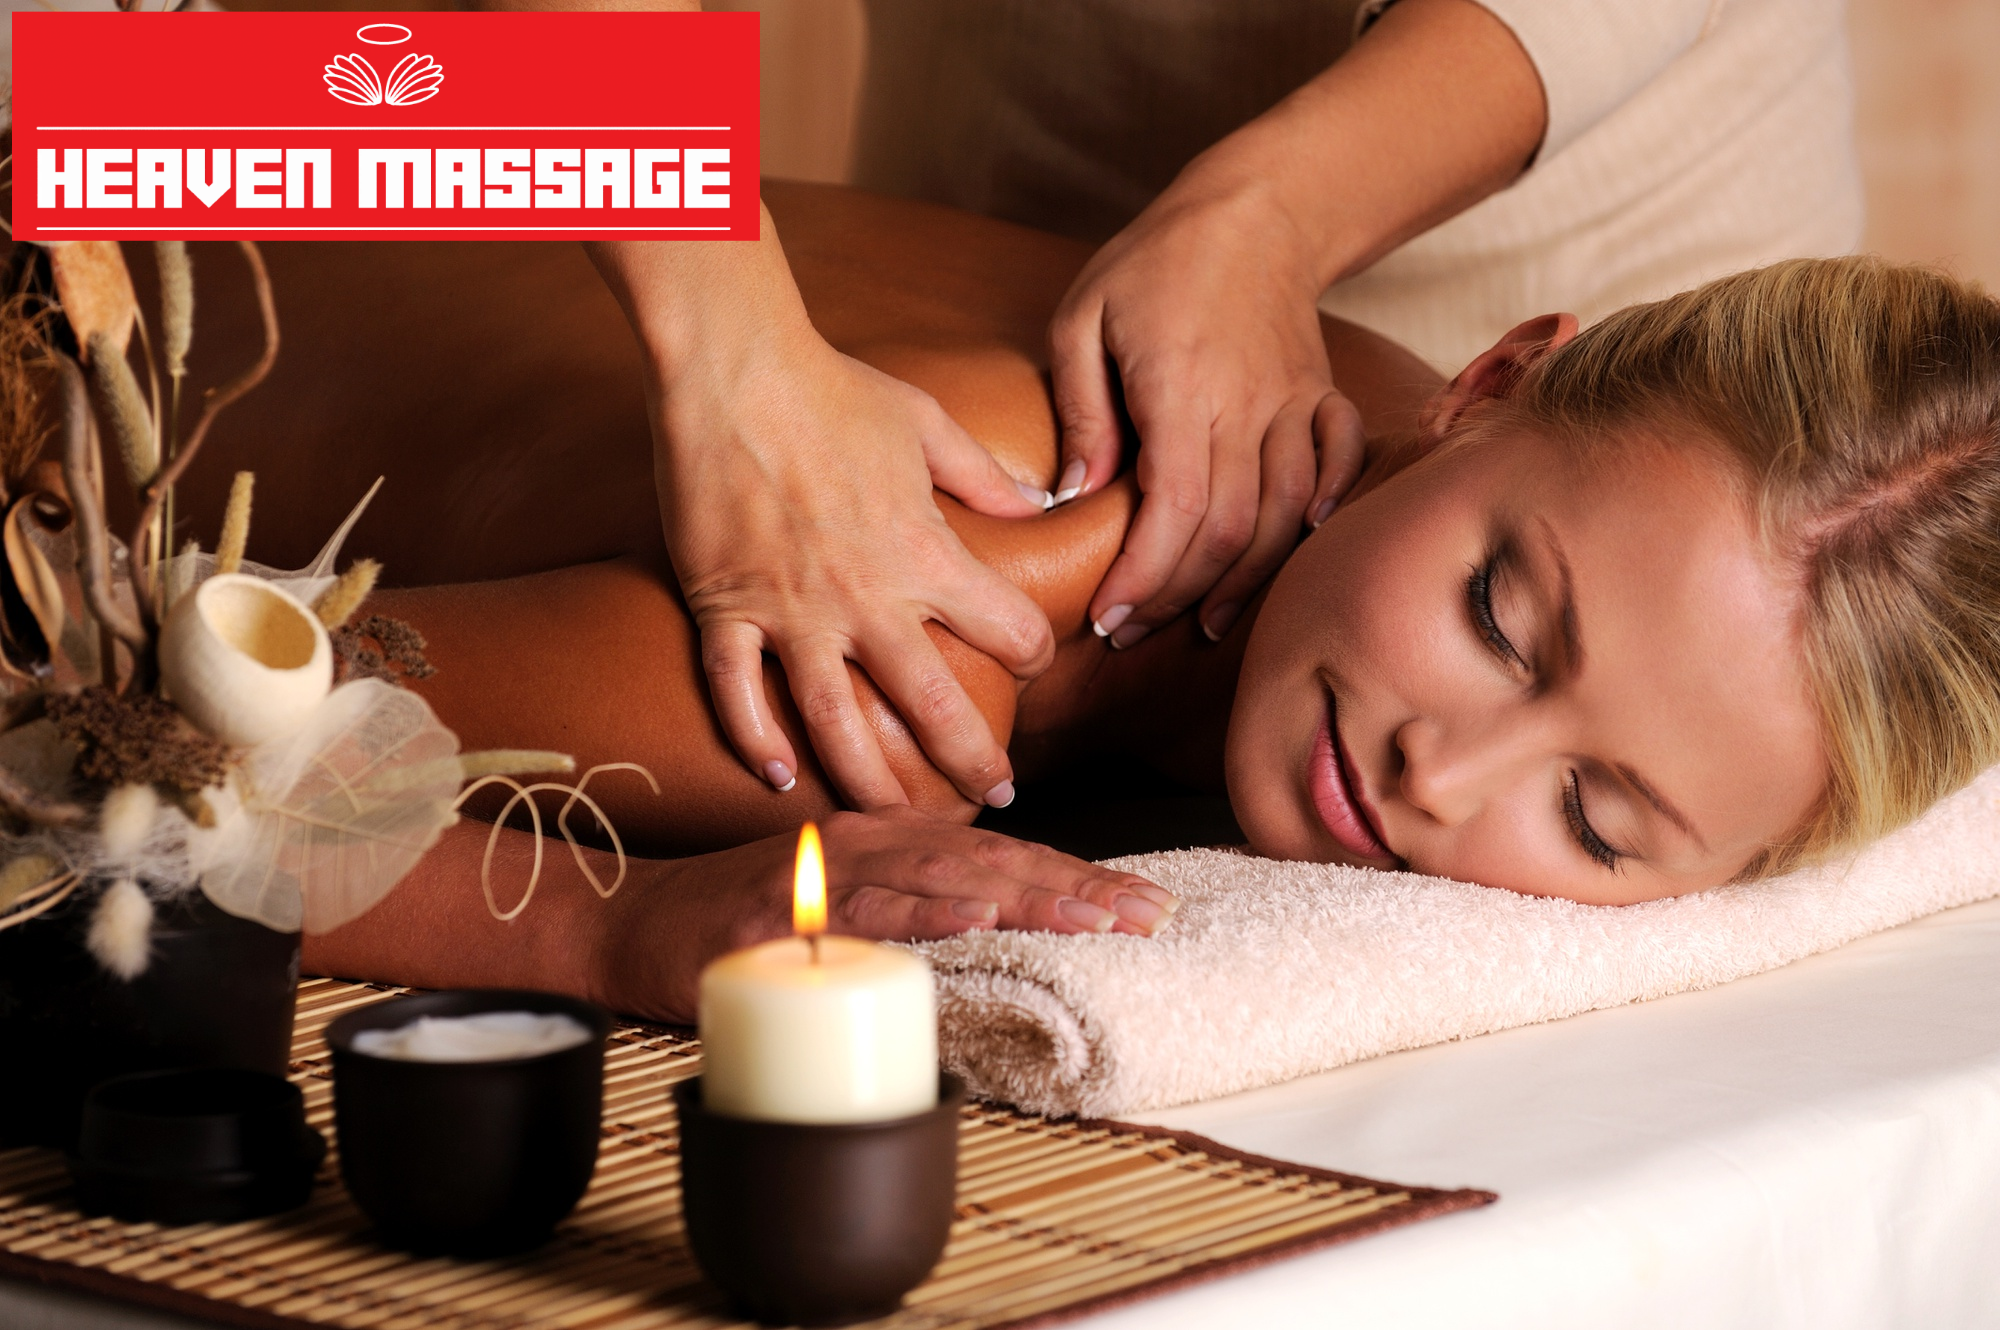 Swedish massage Nuru Massage Nuru Massage Best Nuru Massage Erotic Massage 努魯按摩 天堂努魯按摩